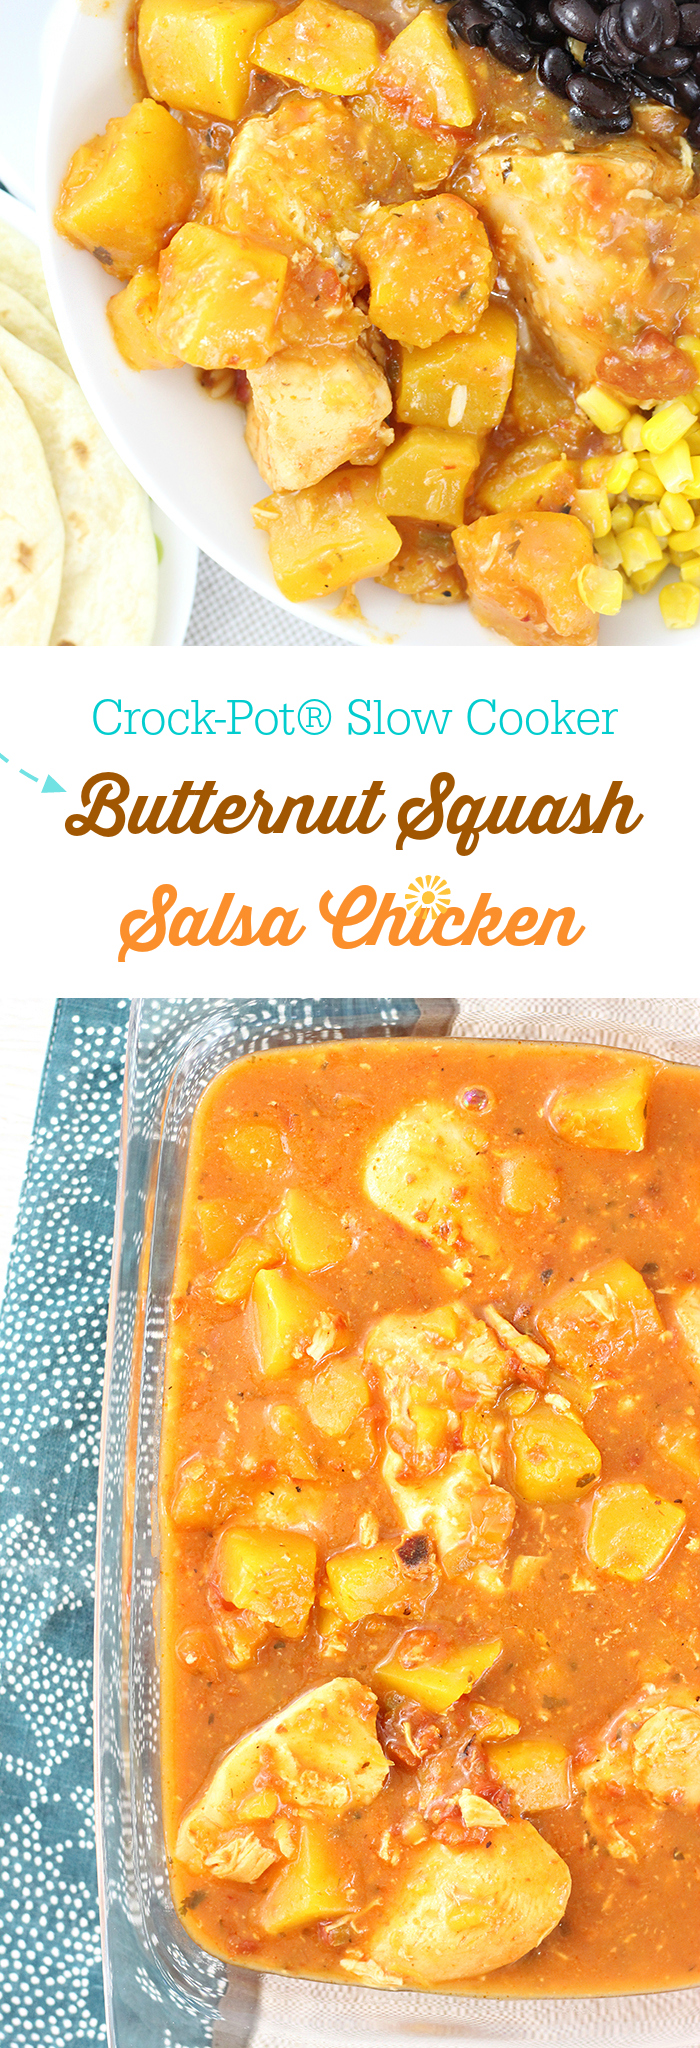 Crock-Pot® Slow Cooker Butternut Squash Salsa Chicken